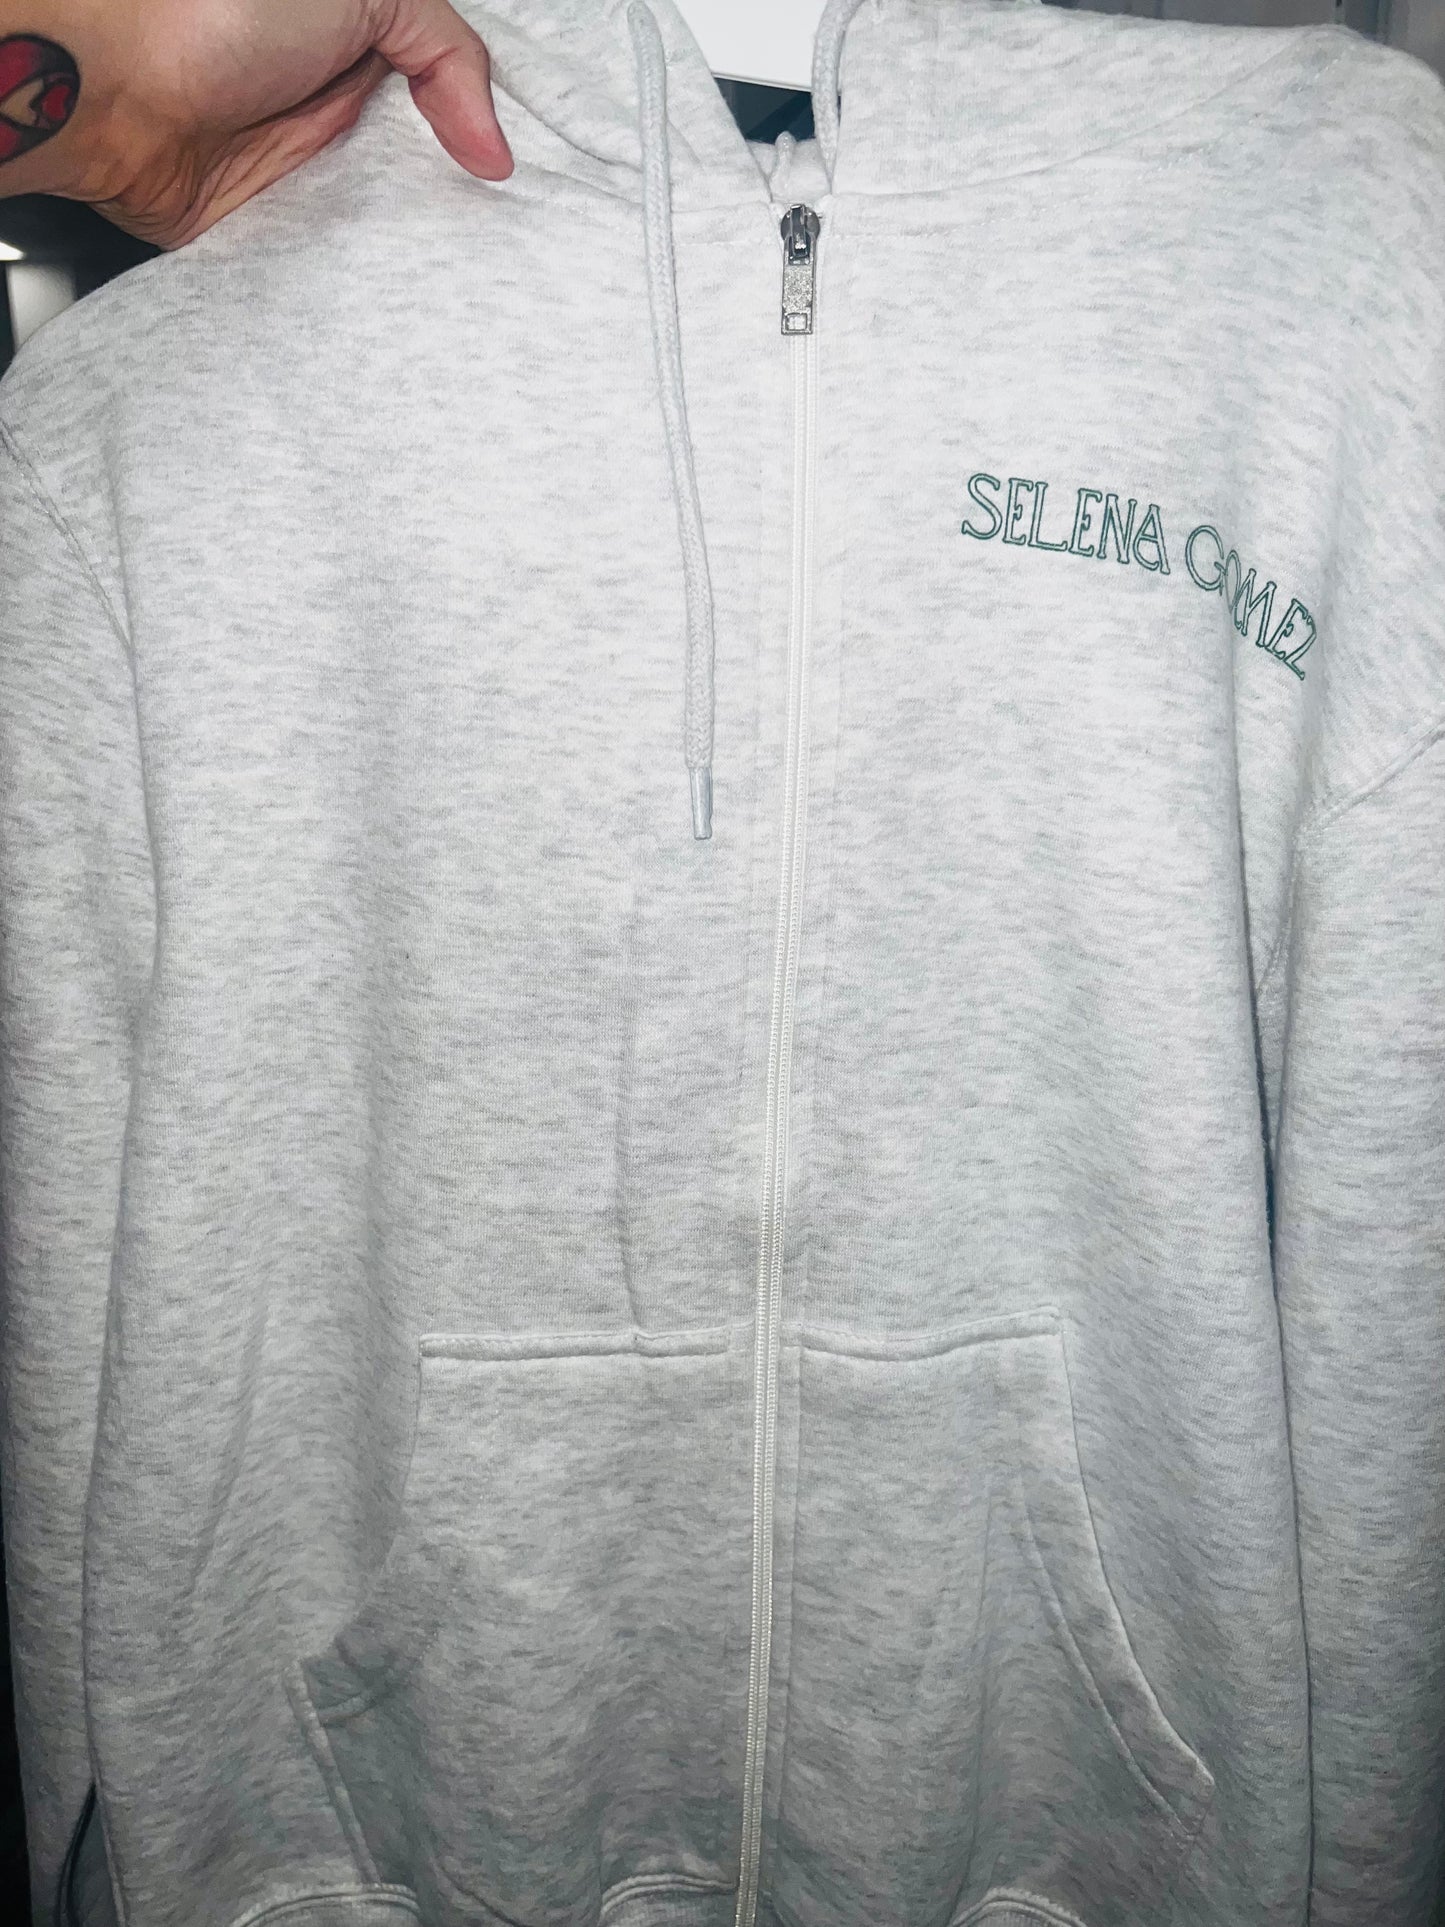 Selena Gomez Zip Up Sweatshirt